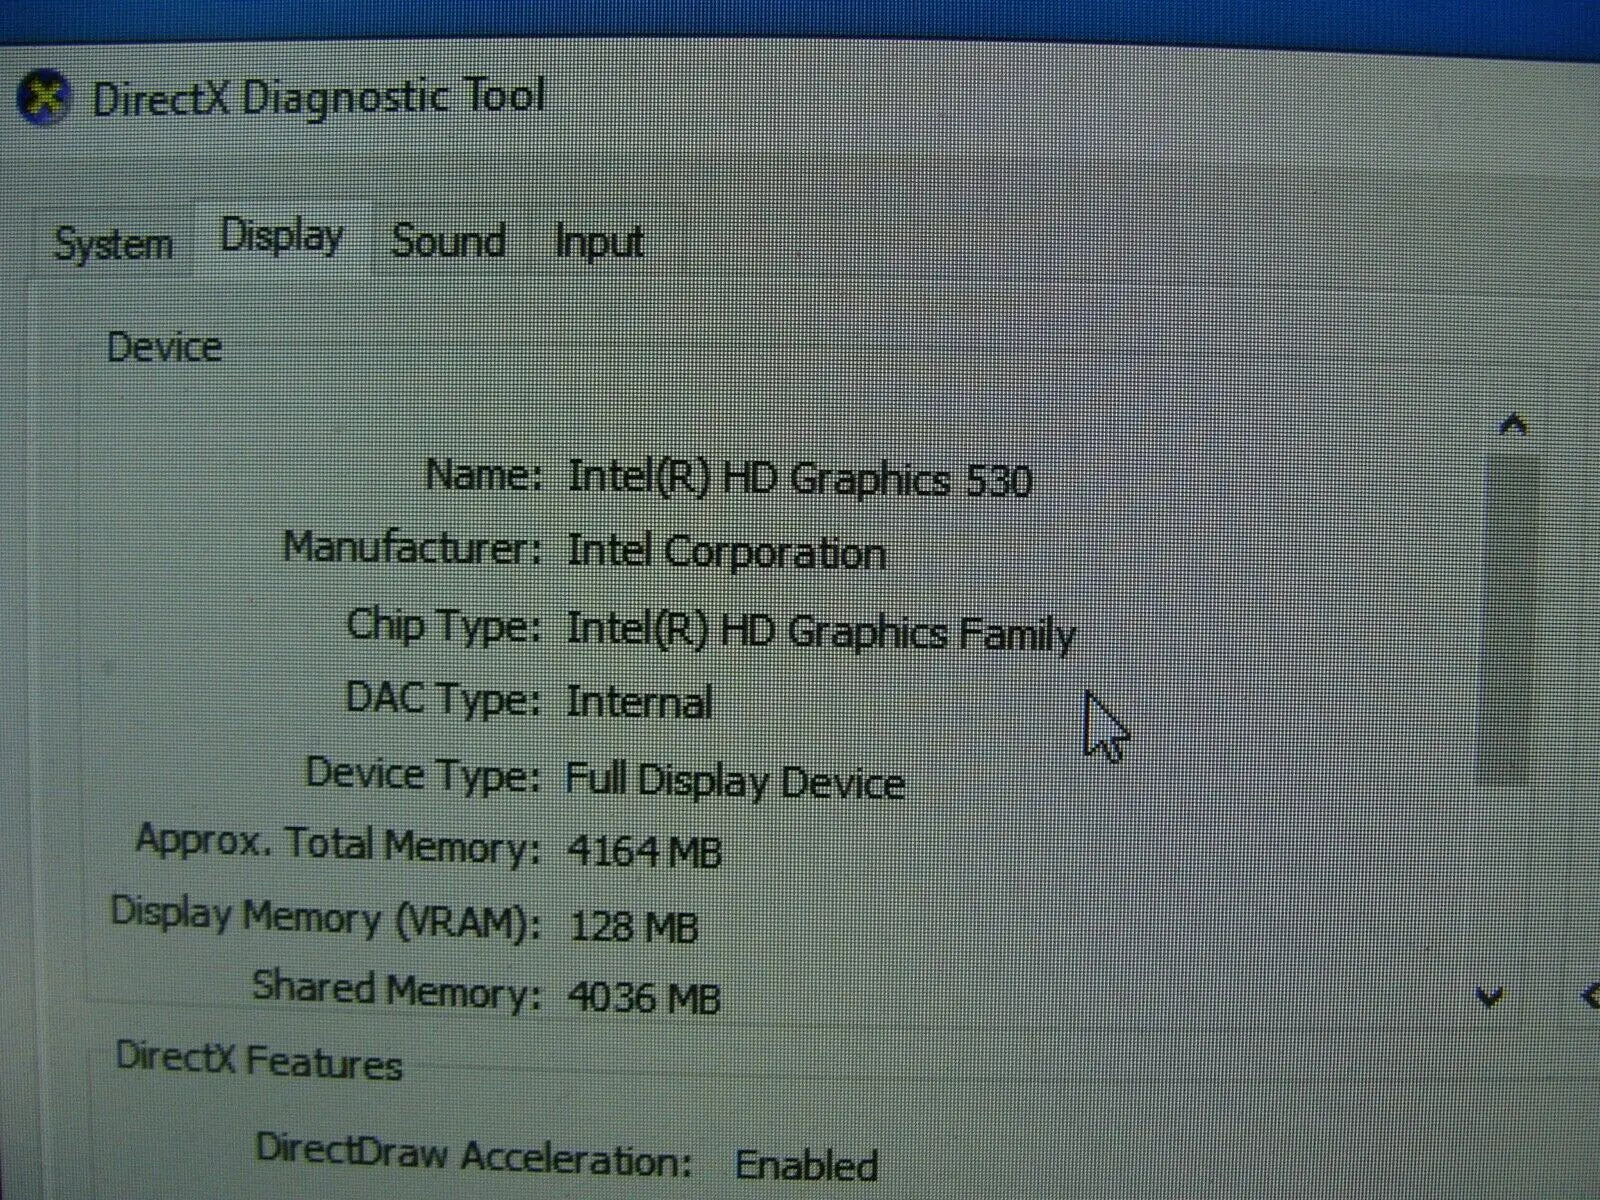 Grab Wifi+BT HP Elitedesk 800 G2 MFF intel i7-6700T 2.80Gh 8GB RAM 1 TB SSD W10P